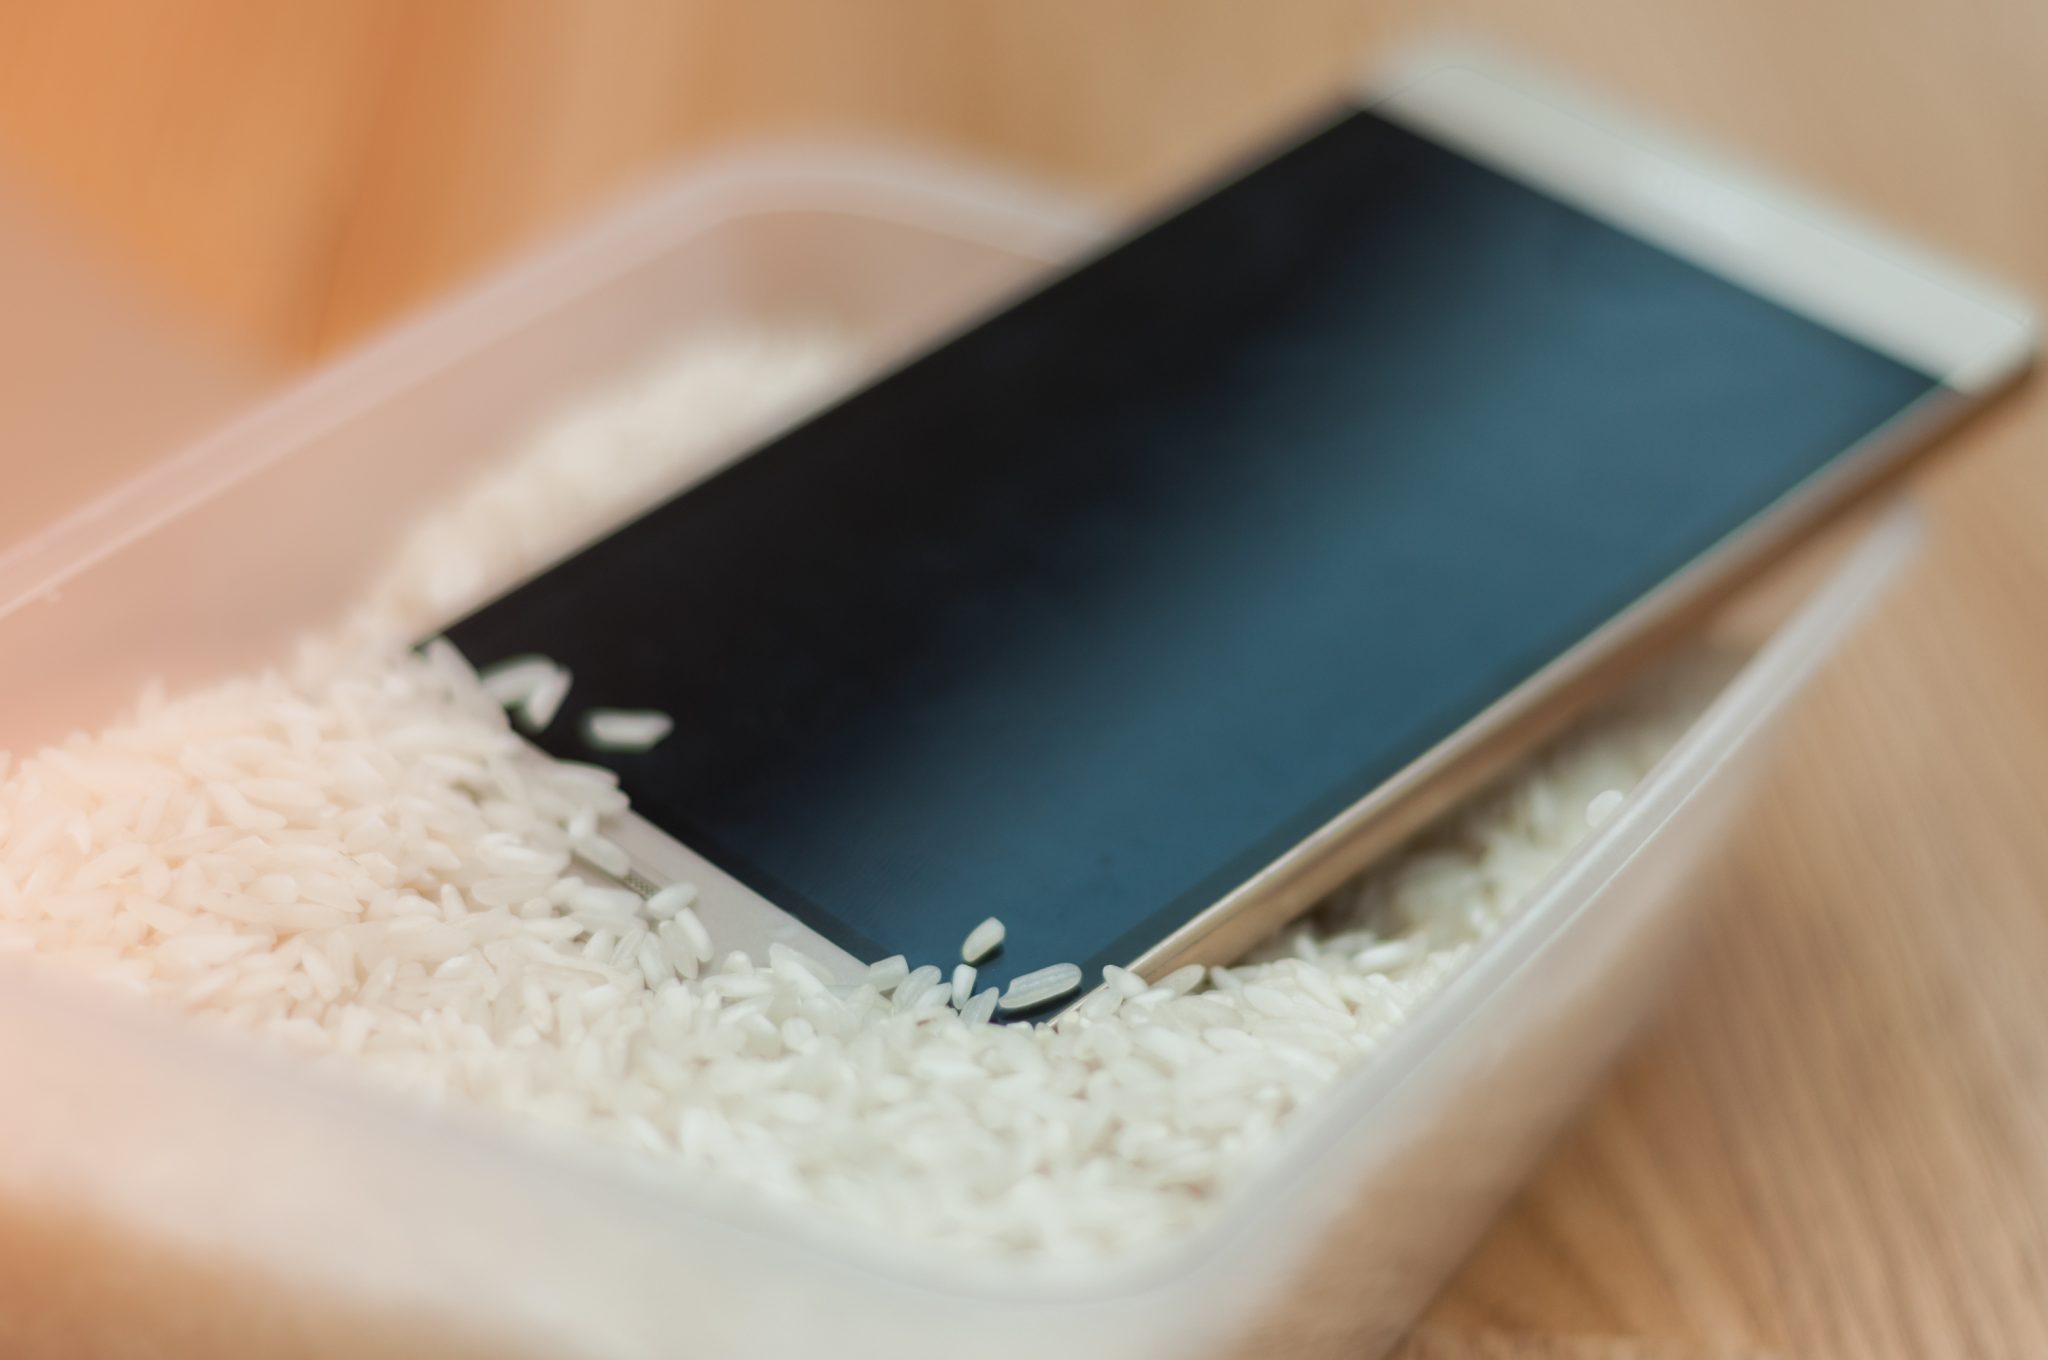 Colocar o iPhone no arroz é uma boa estratégia para quem deixou o celular cair na água.